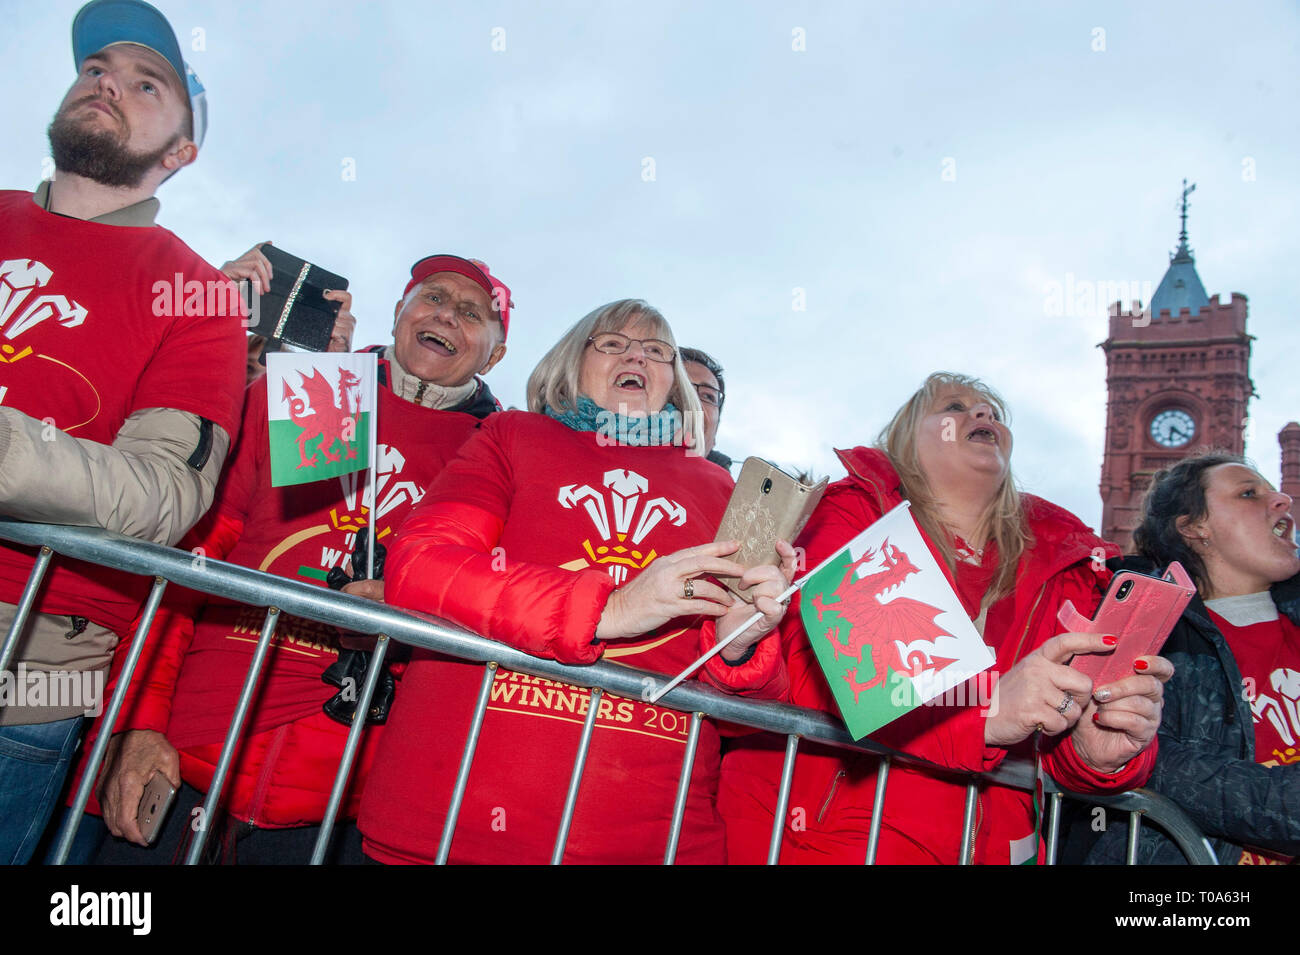 Cardiff, Royaume-Uni. 18 Mar, 2019. Fans de rugby gallois acclame l'équipe de rugby du Pays de Galles qui a remporté à la fois les Six Nations et le Grand Slam sont accueillis à l'Assemblée nationale du Pays de Galles Senedd bâtiment dans la baie de Cardiff aujourd'hui pour une célébration publique événement. Credit : Phil Rees/Alamy Live News Banque D'Images